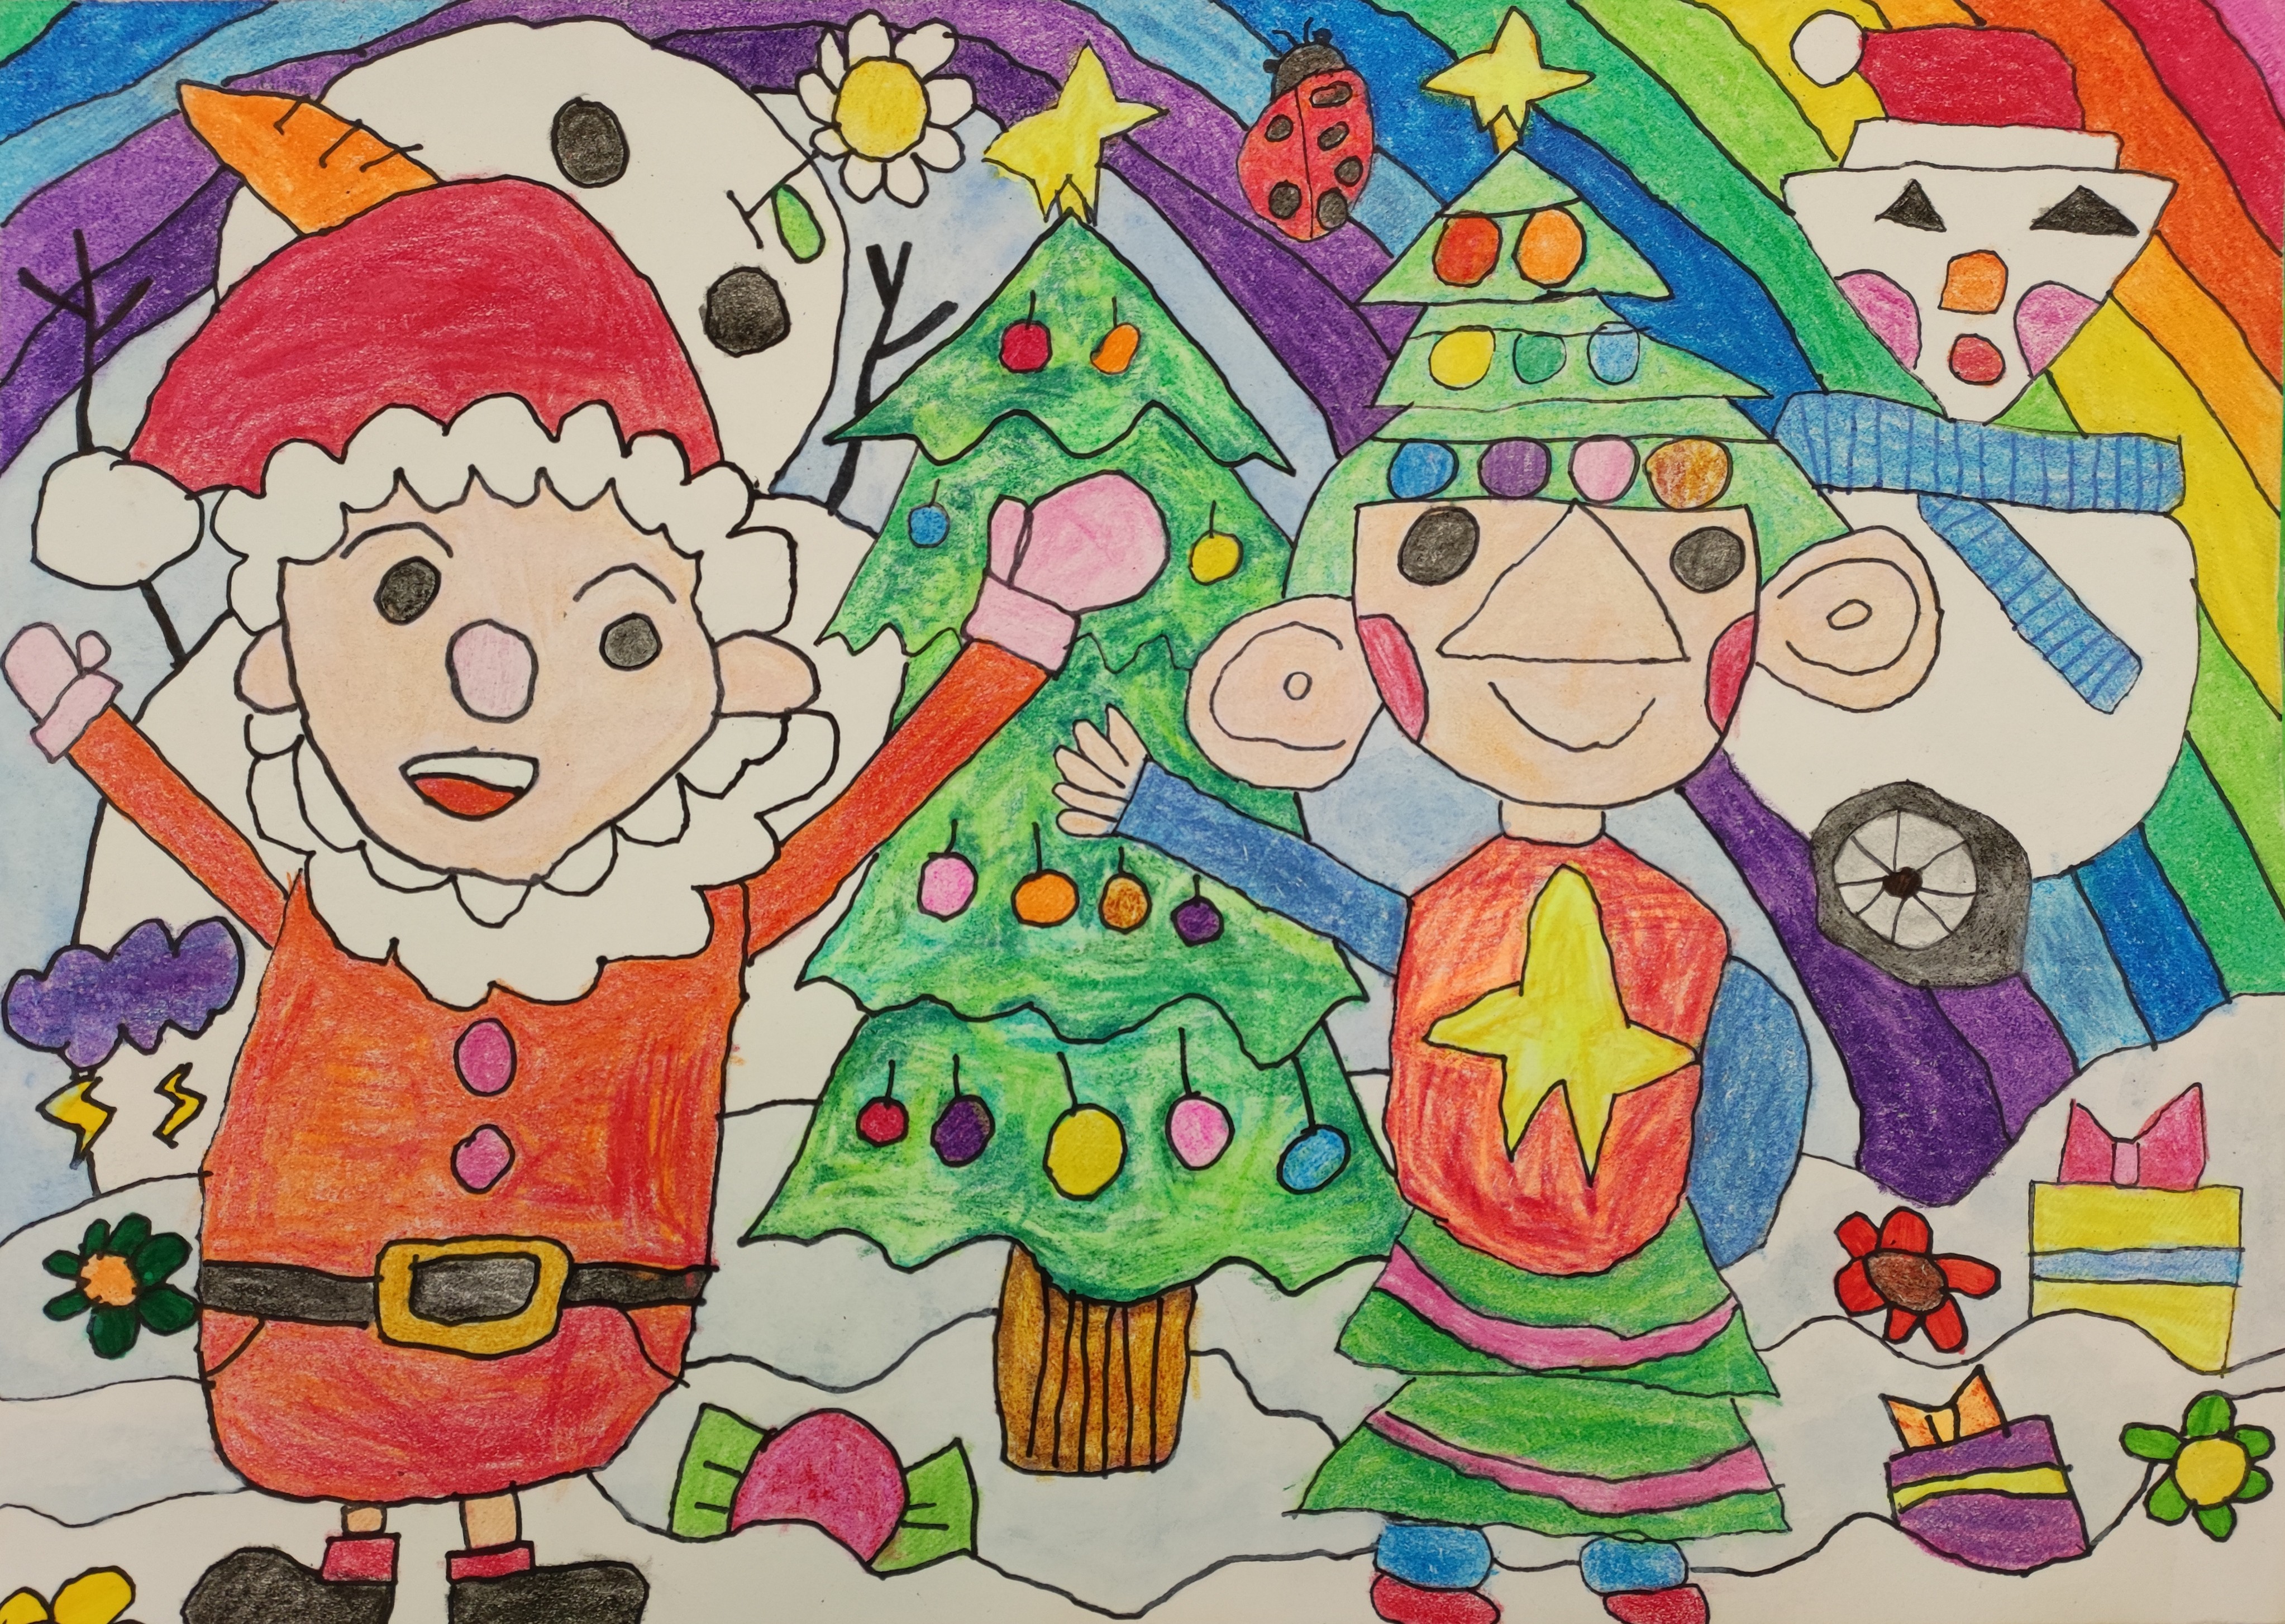 繽紛聖誕-幼稚園初級組(K1至K2)-季軍-馮鉦元<br />聖誕老人與聖誕樹造型的小精靈快樂地慶祝聖誕節，還有特別造型的雪人，造型有創意，色彩繽紛，繼續努力啊！